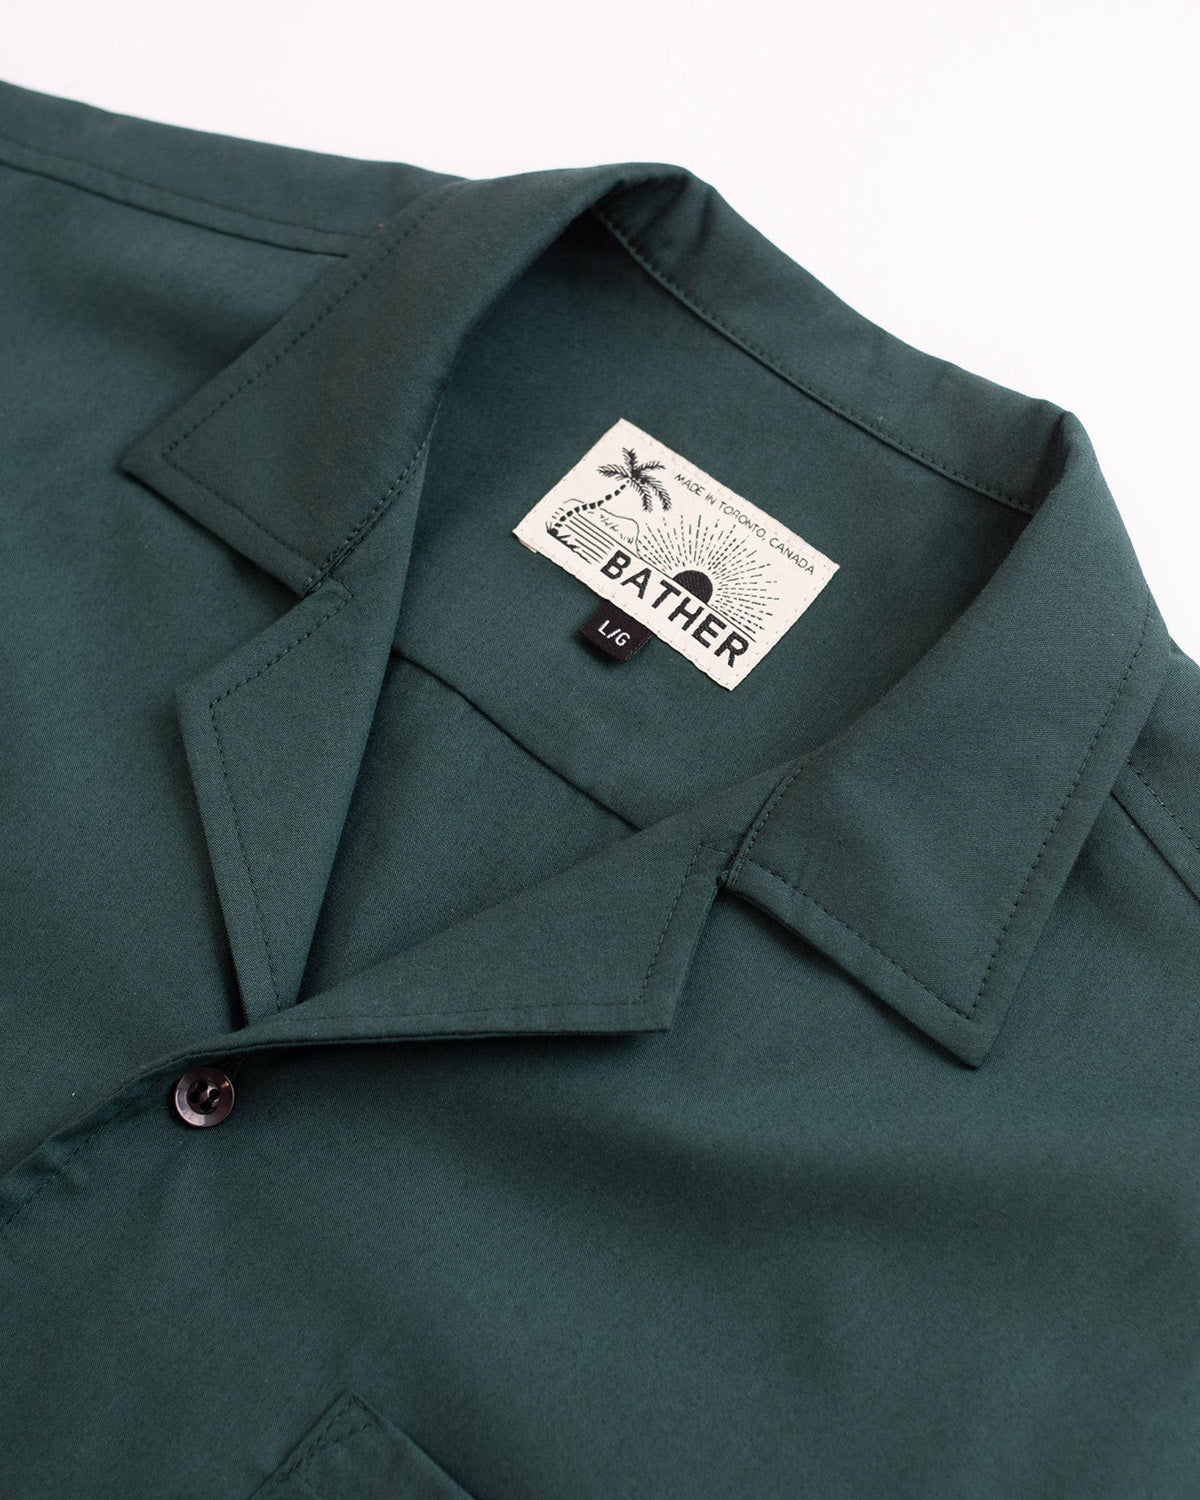 pine green Bather camp shirt close up